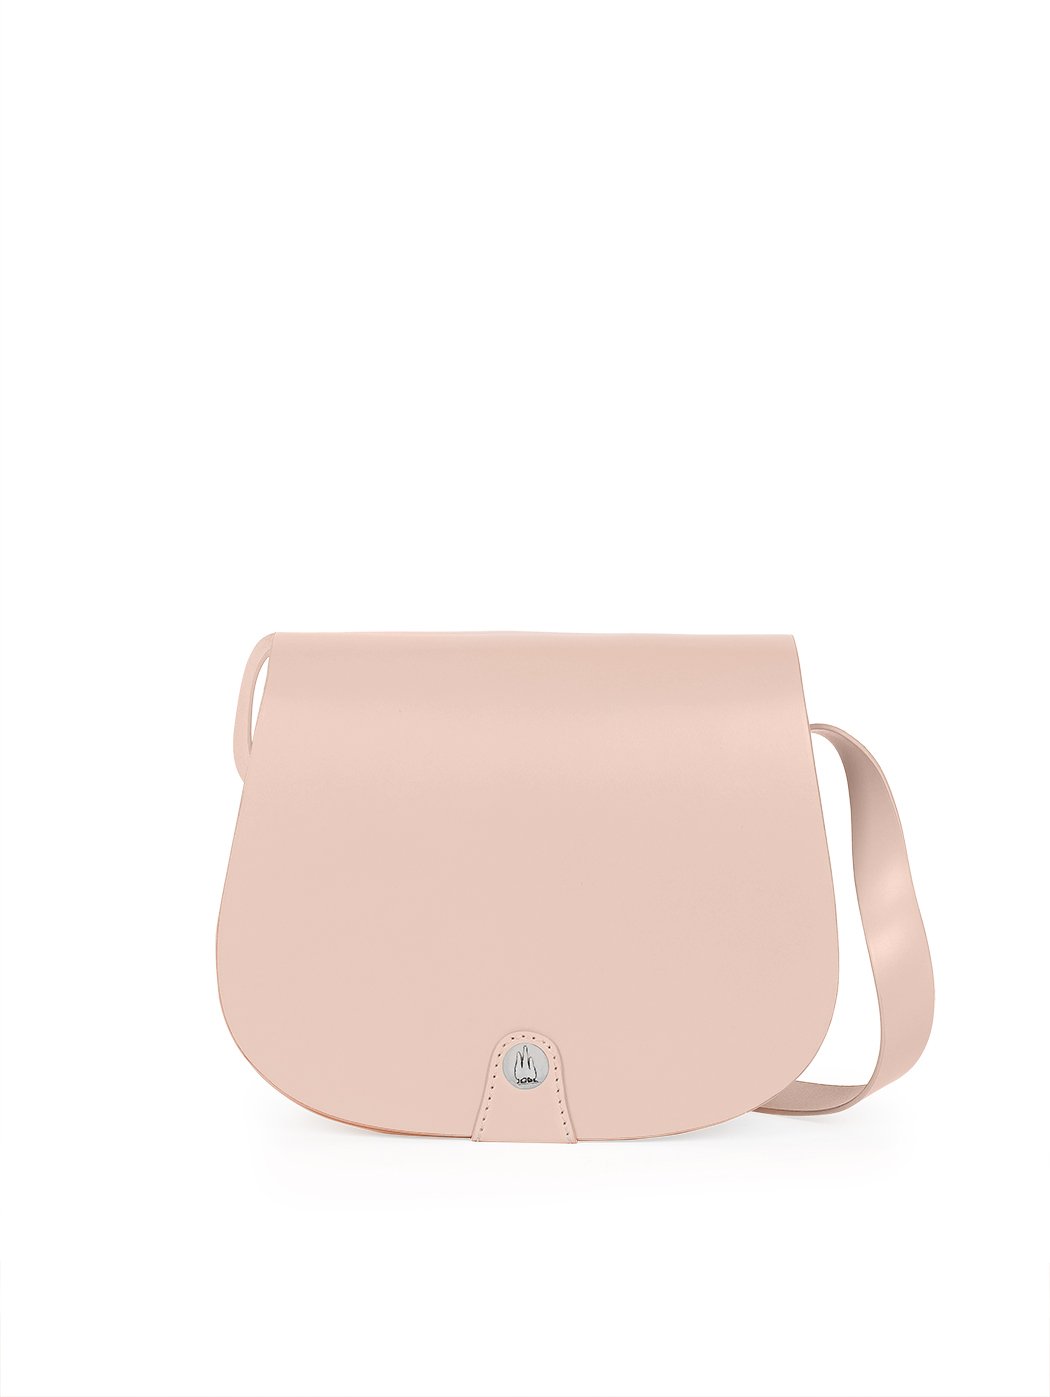 Кожаная сумка кросс – боди нежно - розового цвета